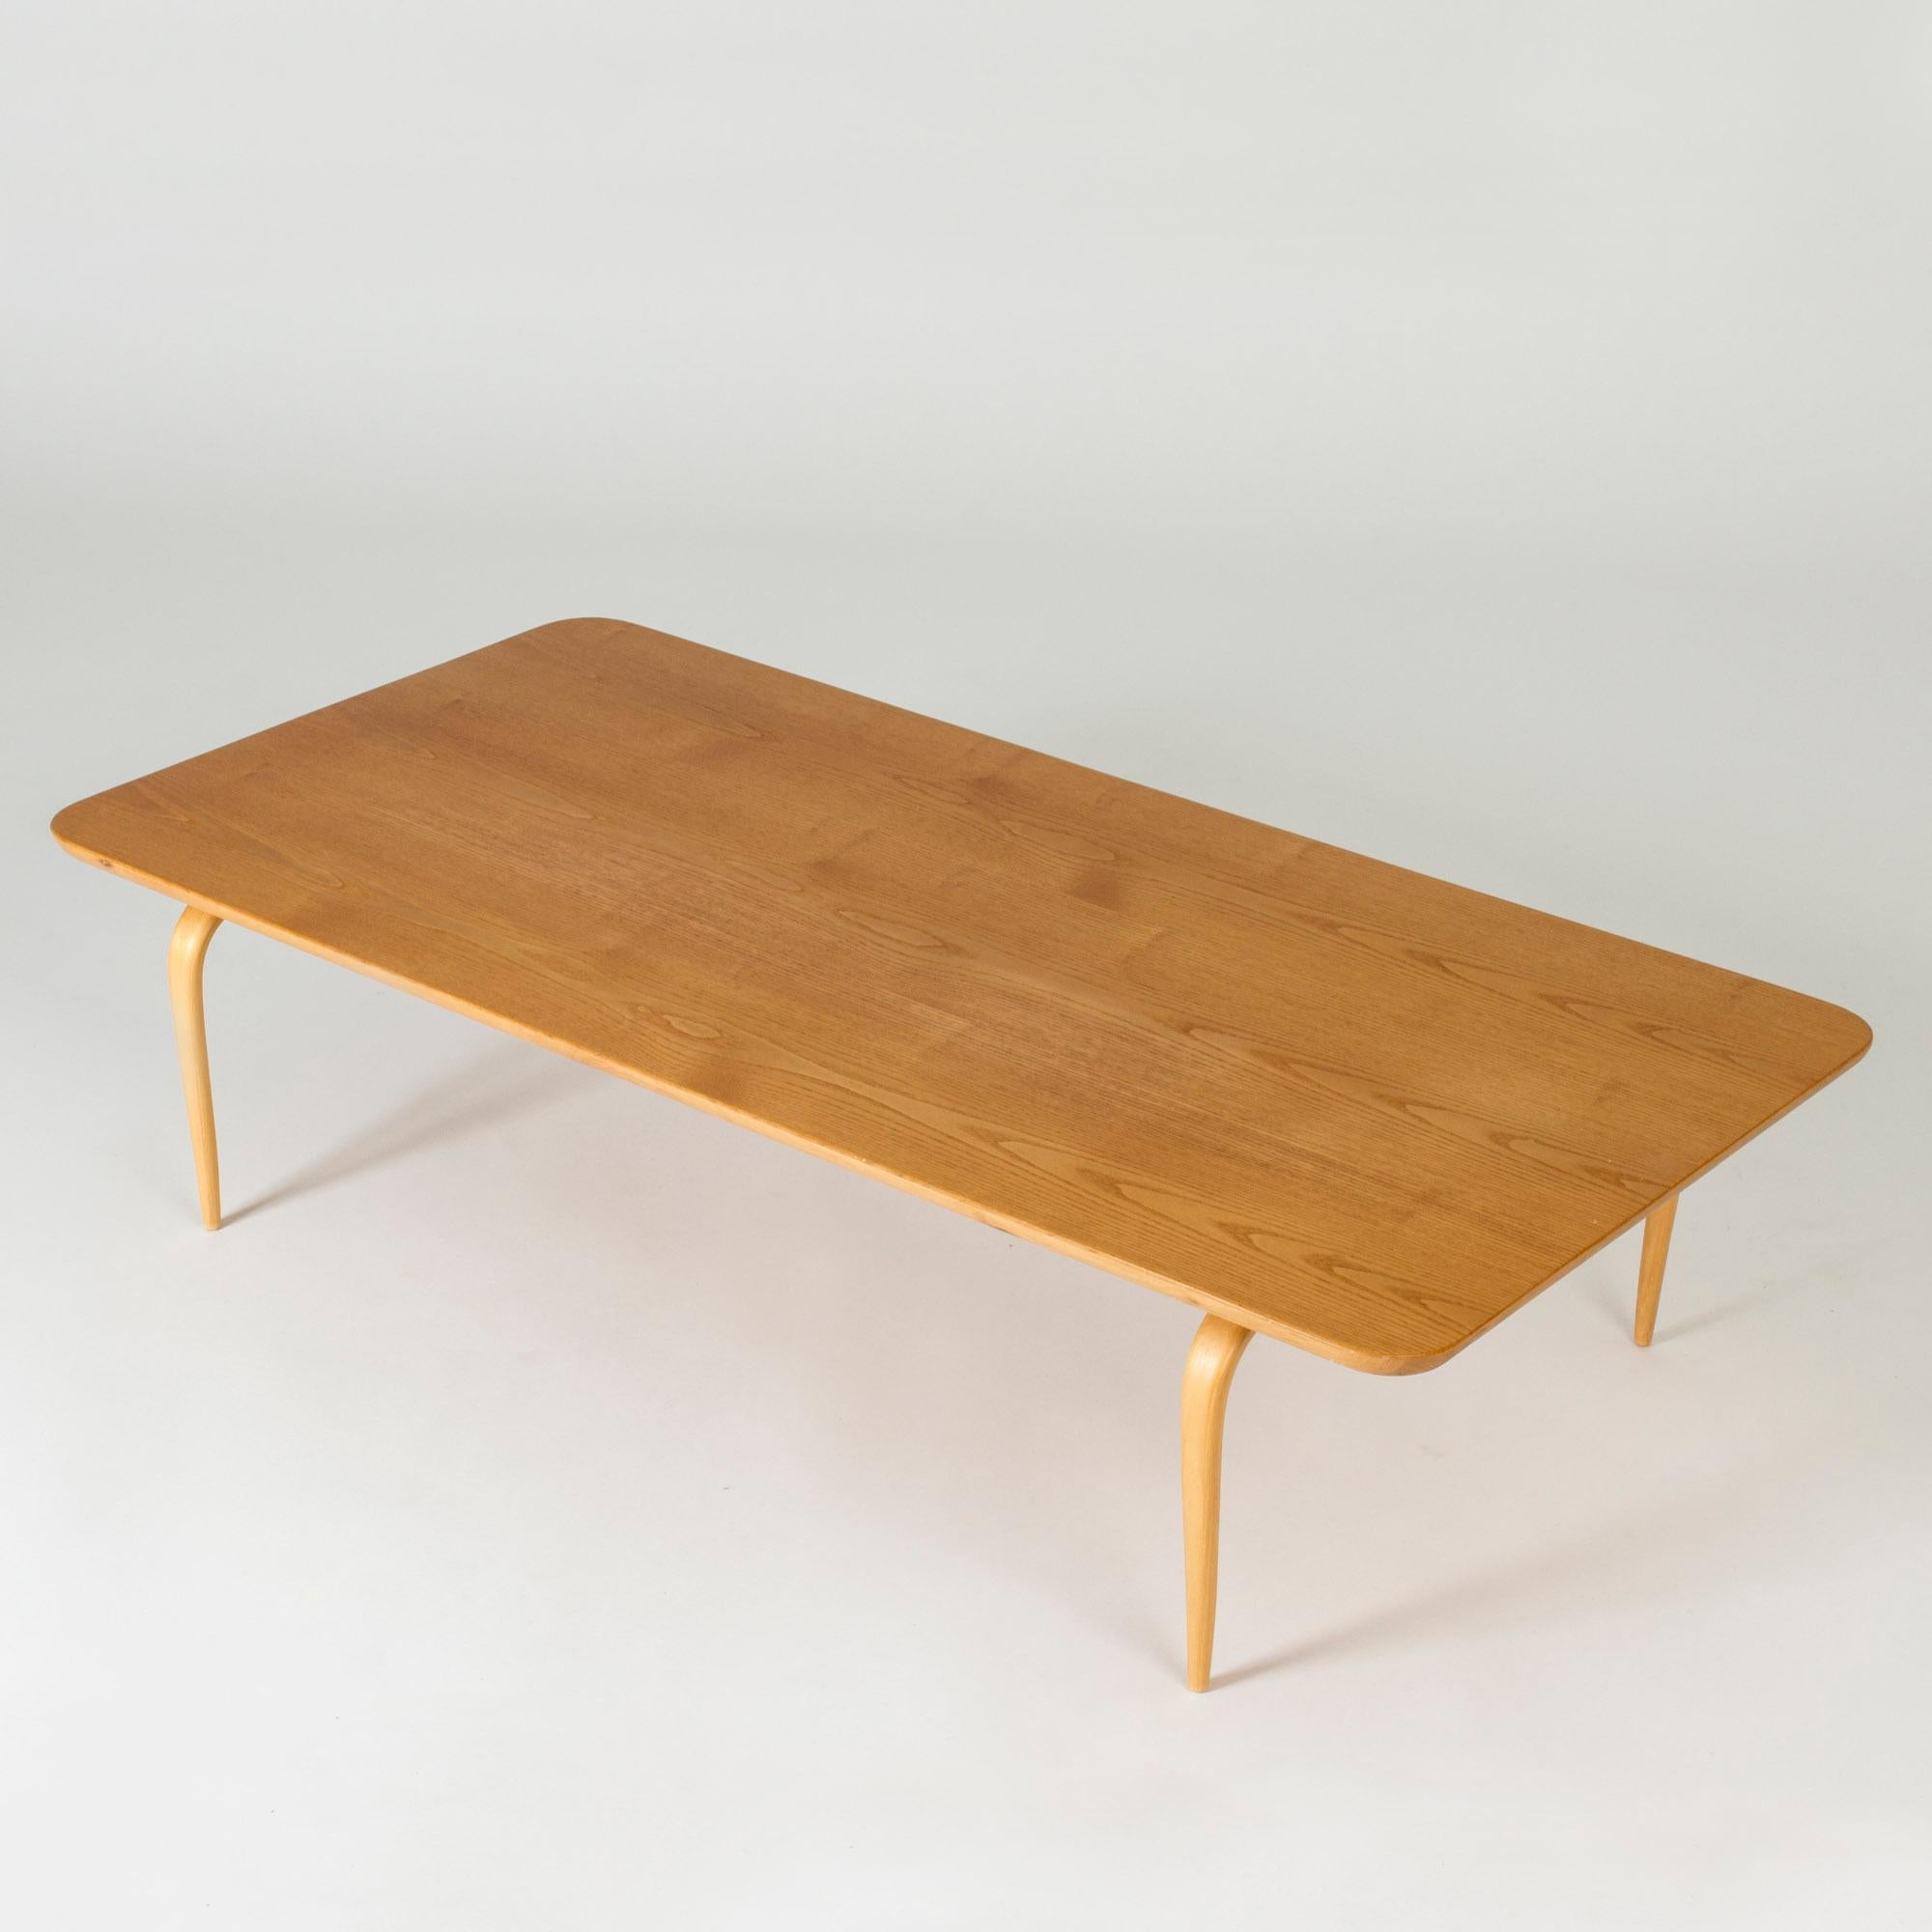 Table basse de Bruno Mathsson, fabriquée en bouleau. Design très bas, avec des coins élégamment arrondis et des pieds incurvés.